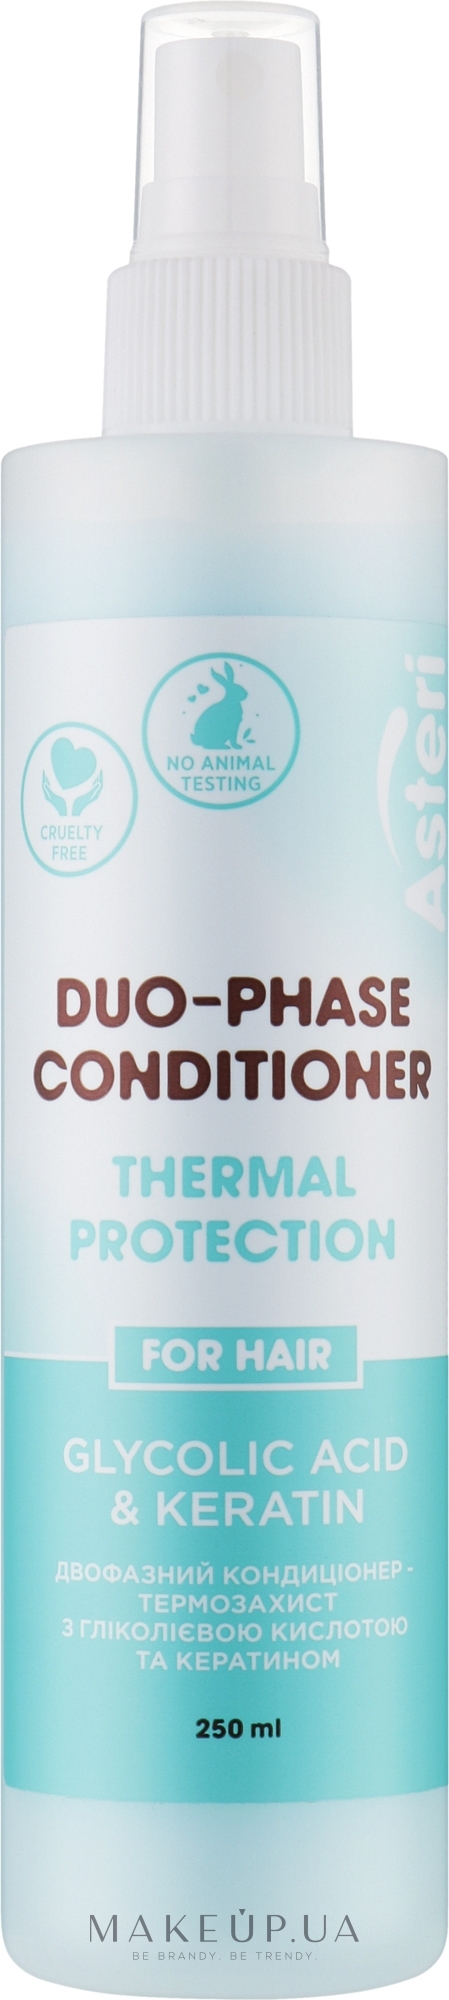 Двофазний кондиціонер для волосся - Asteri Glycolic Acid & Keratin Duo-Phase Conditioner — фото 250ml